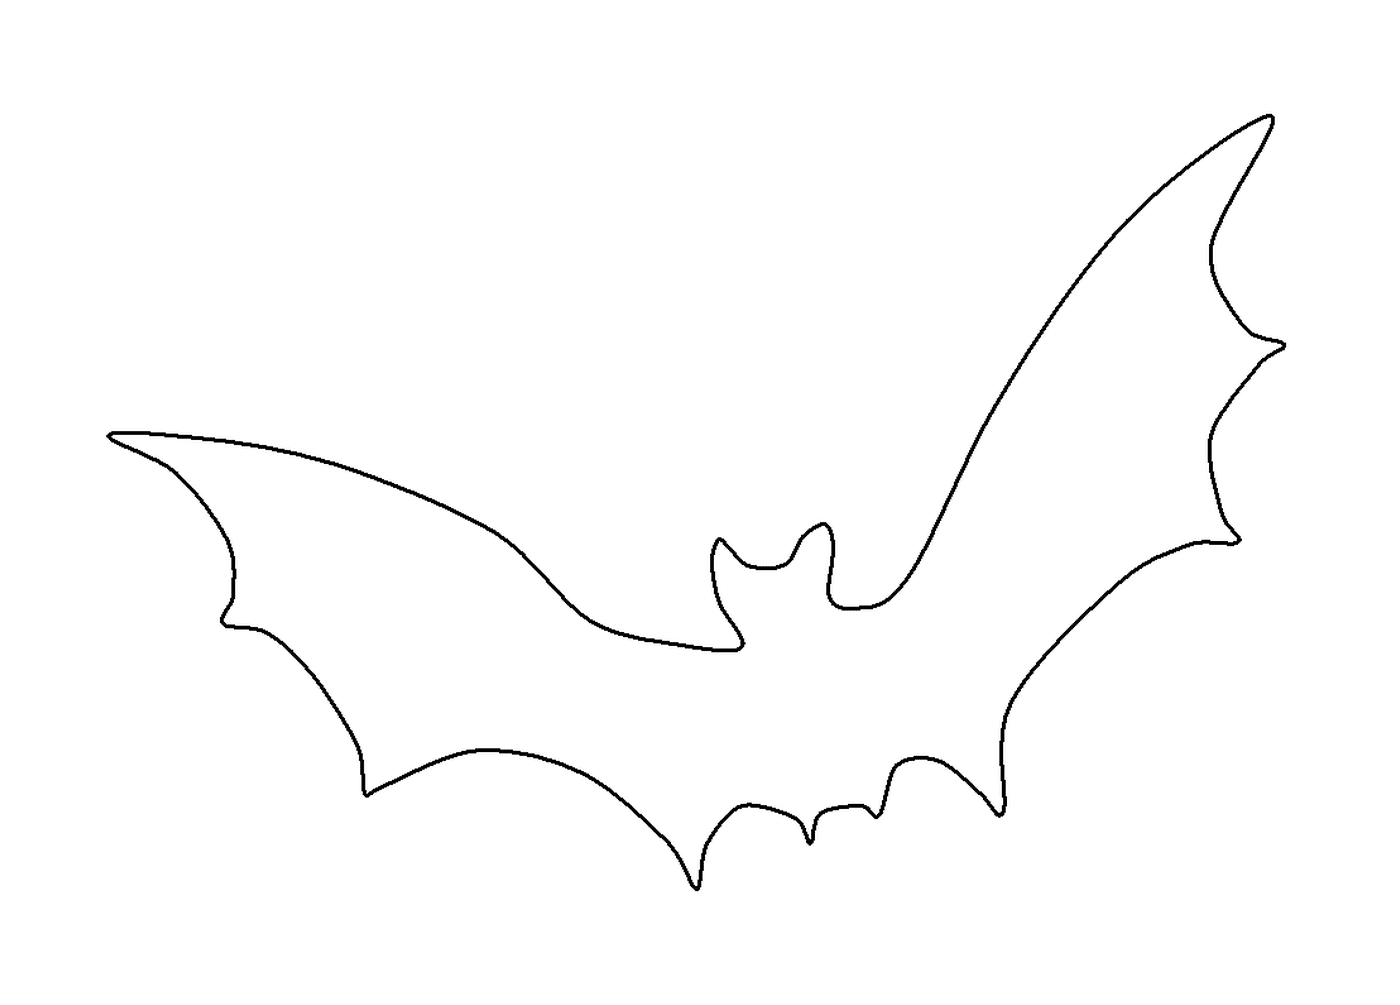  contorno de um morcego voador 